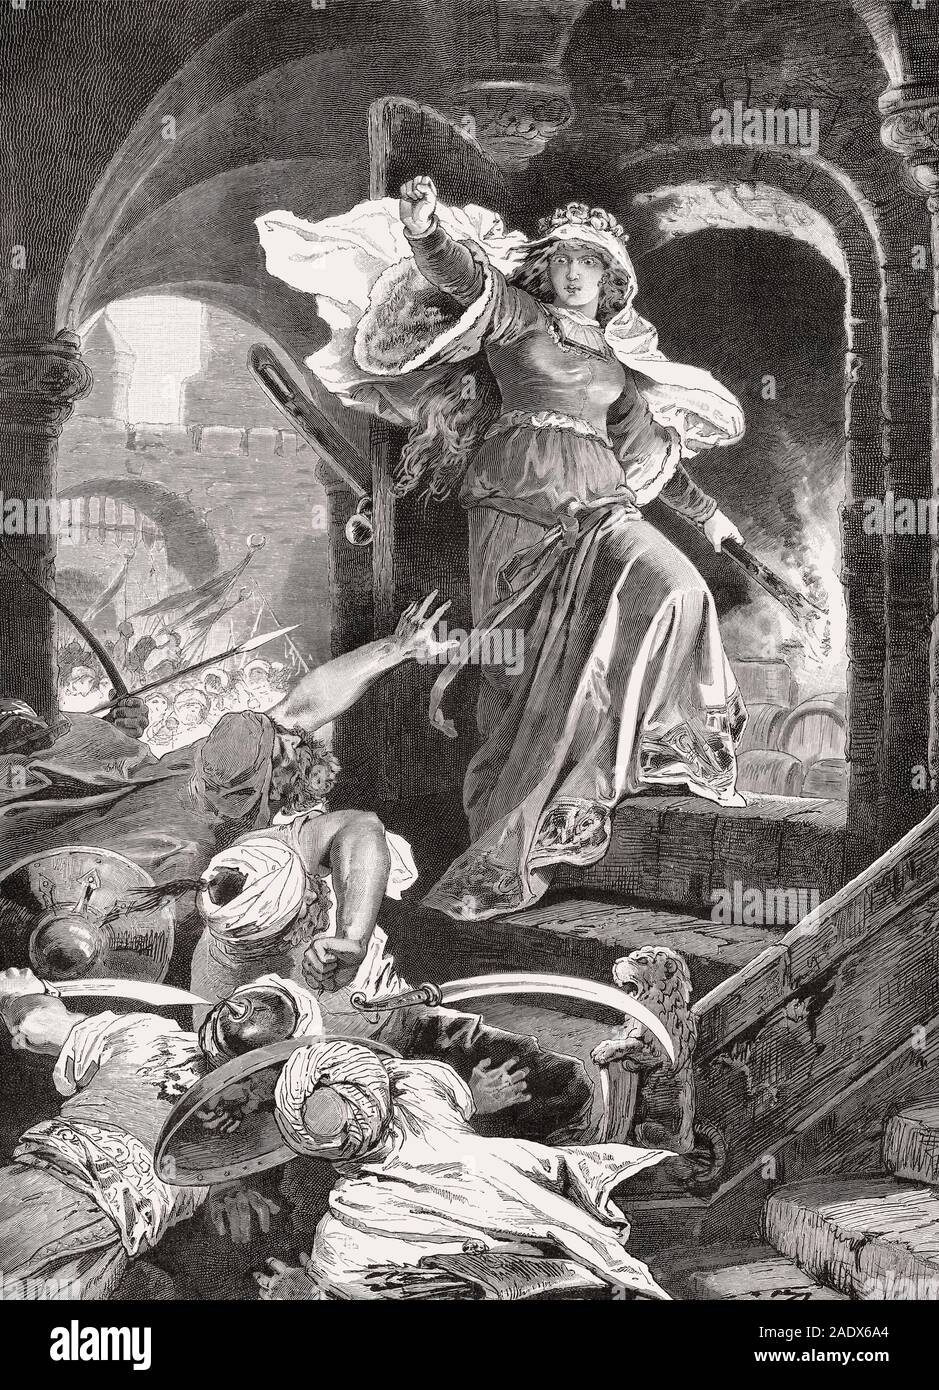 The powder magazine explosion, Battle of Szigeth, 1566 Stock Photo